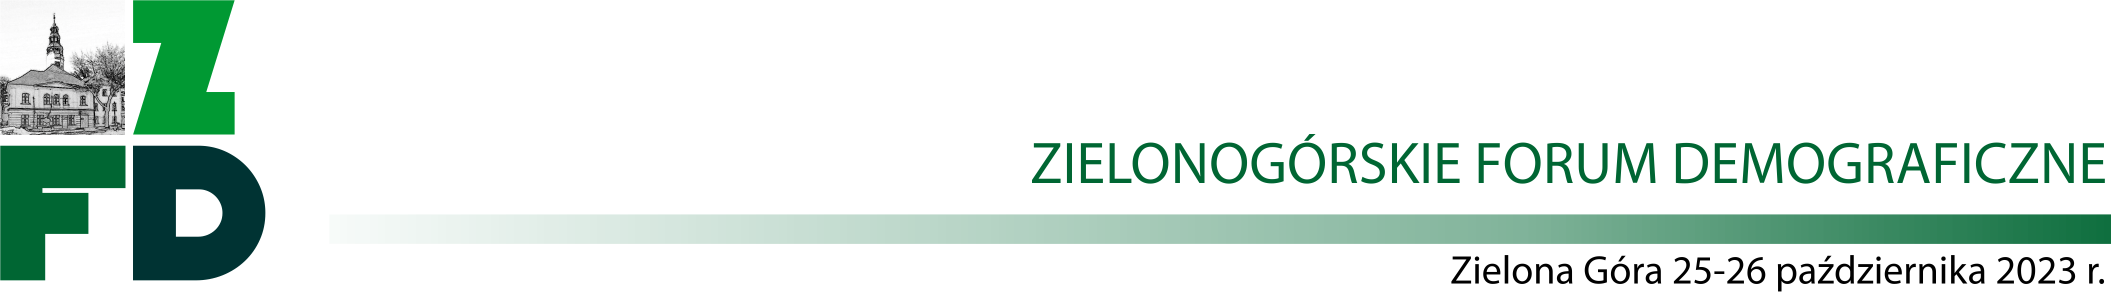 Logo Zielonogórskiego Forum Demograficznego. Grafika przedstawiające ratusz zielonogórski wpisany w skrót złożony z trzech liter (ZFD) w różnych odcieniach zieleni. 